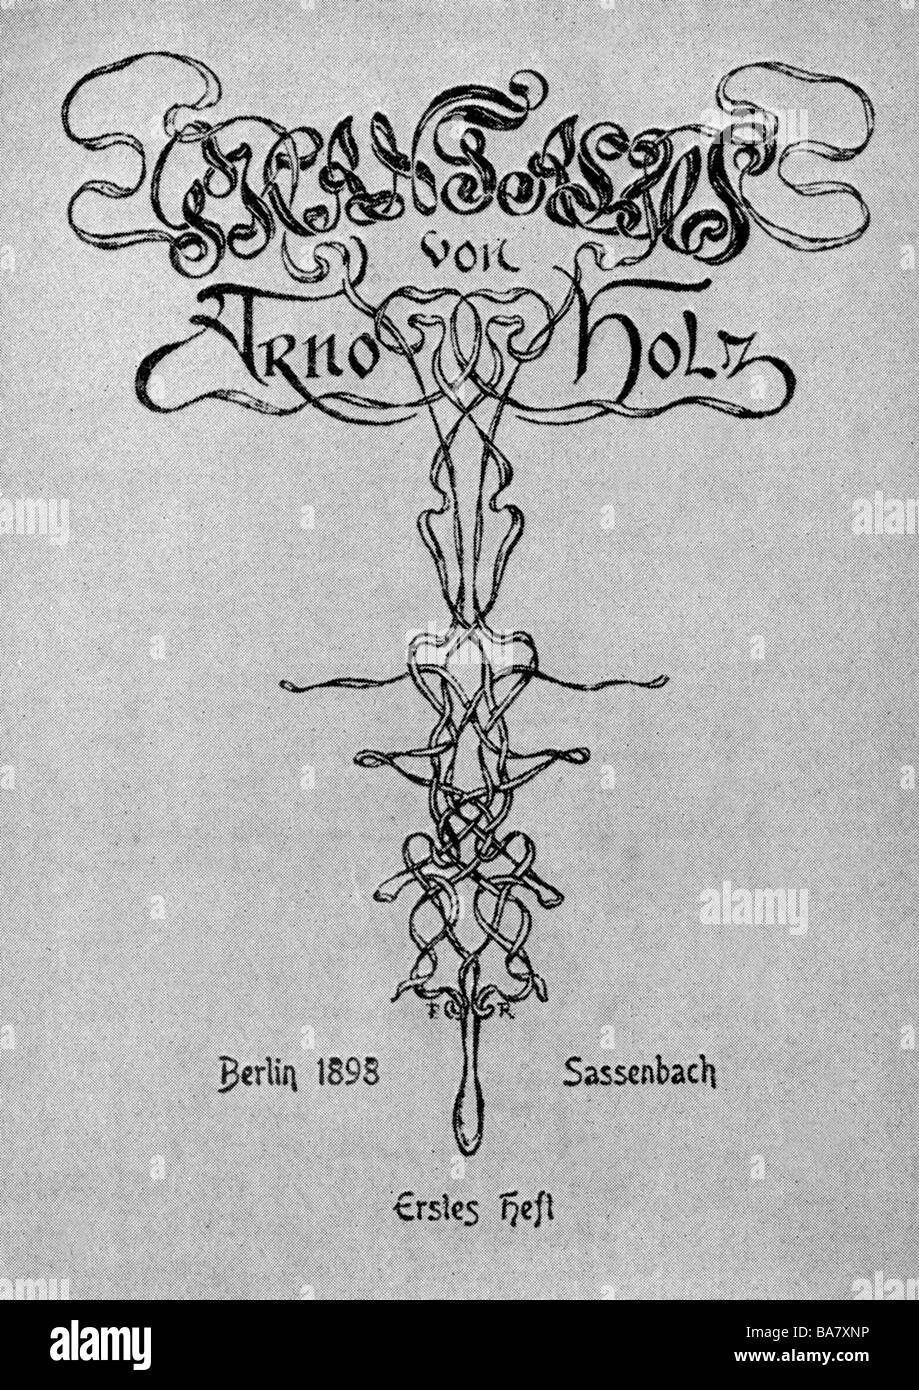 Holz, Arno, 26.4.1863 - 26.10.1929, auteur/écrivain allemand, oeuvre 'Phansitus', première édition, Cover, Sassenbach Verlag, Berlin, 1898, Banque D'Images